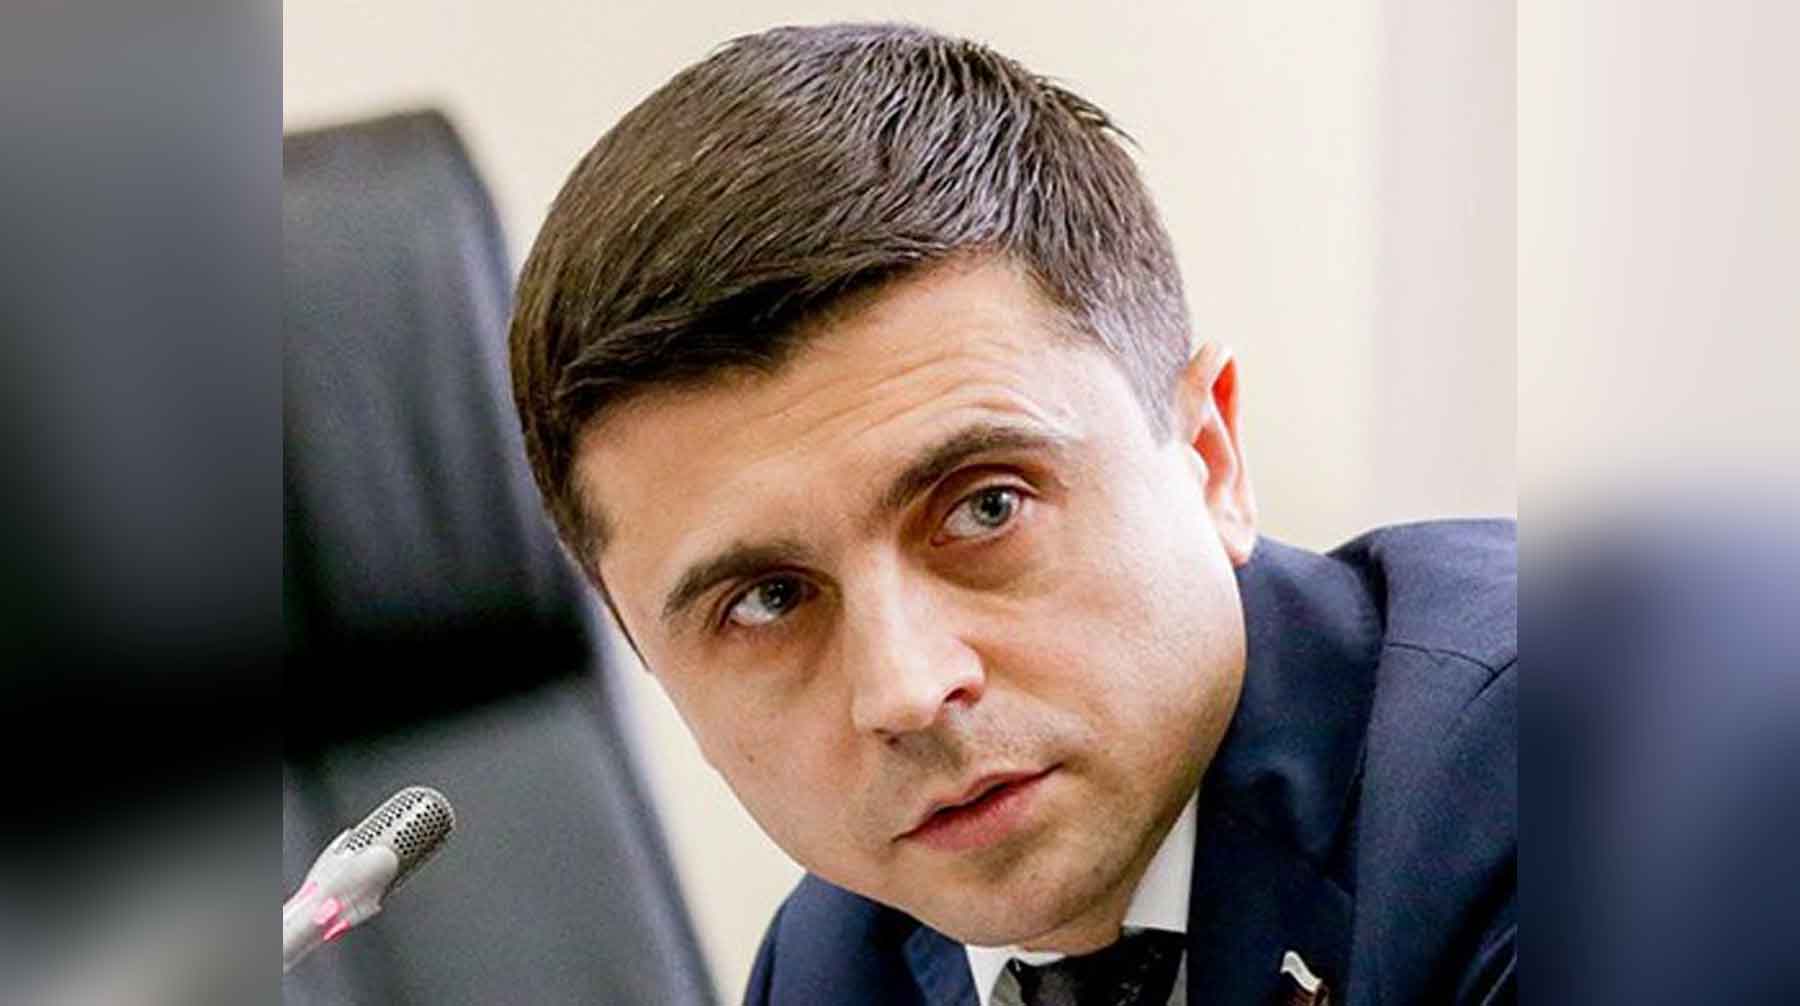 Ранее экс-президент заявил, что Киев может признать полуостров российским в обмен на решение конфликта в Донбассе Руслан Бальбек